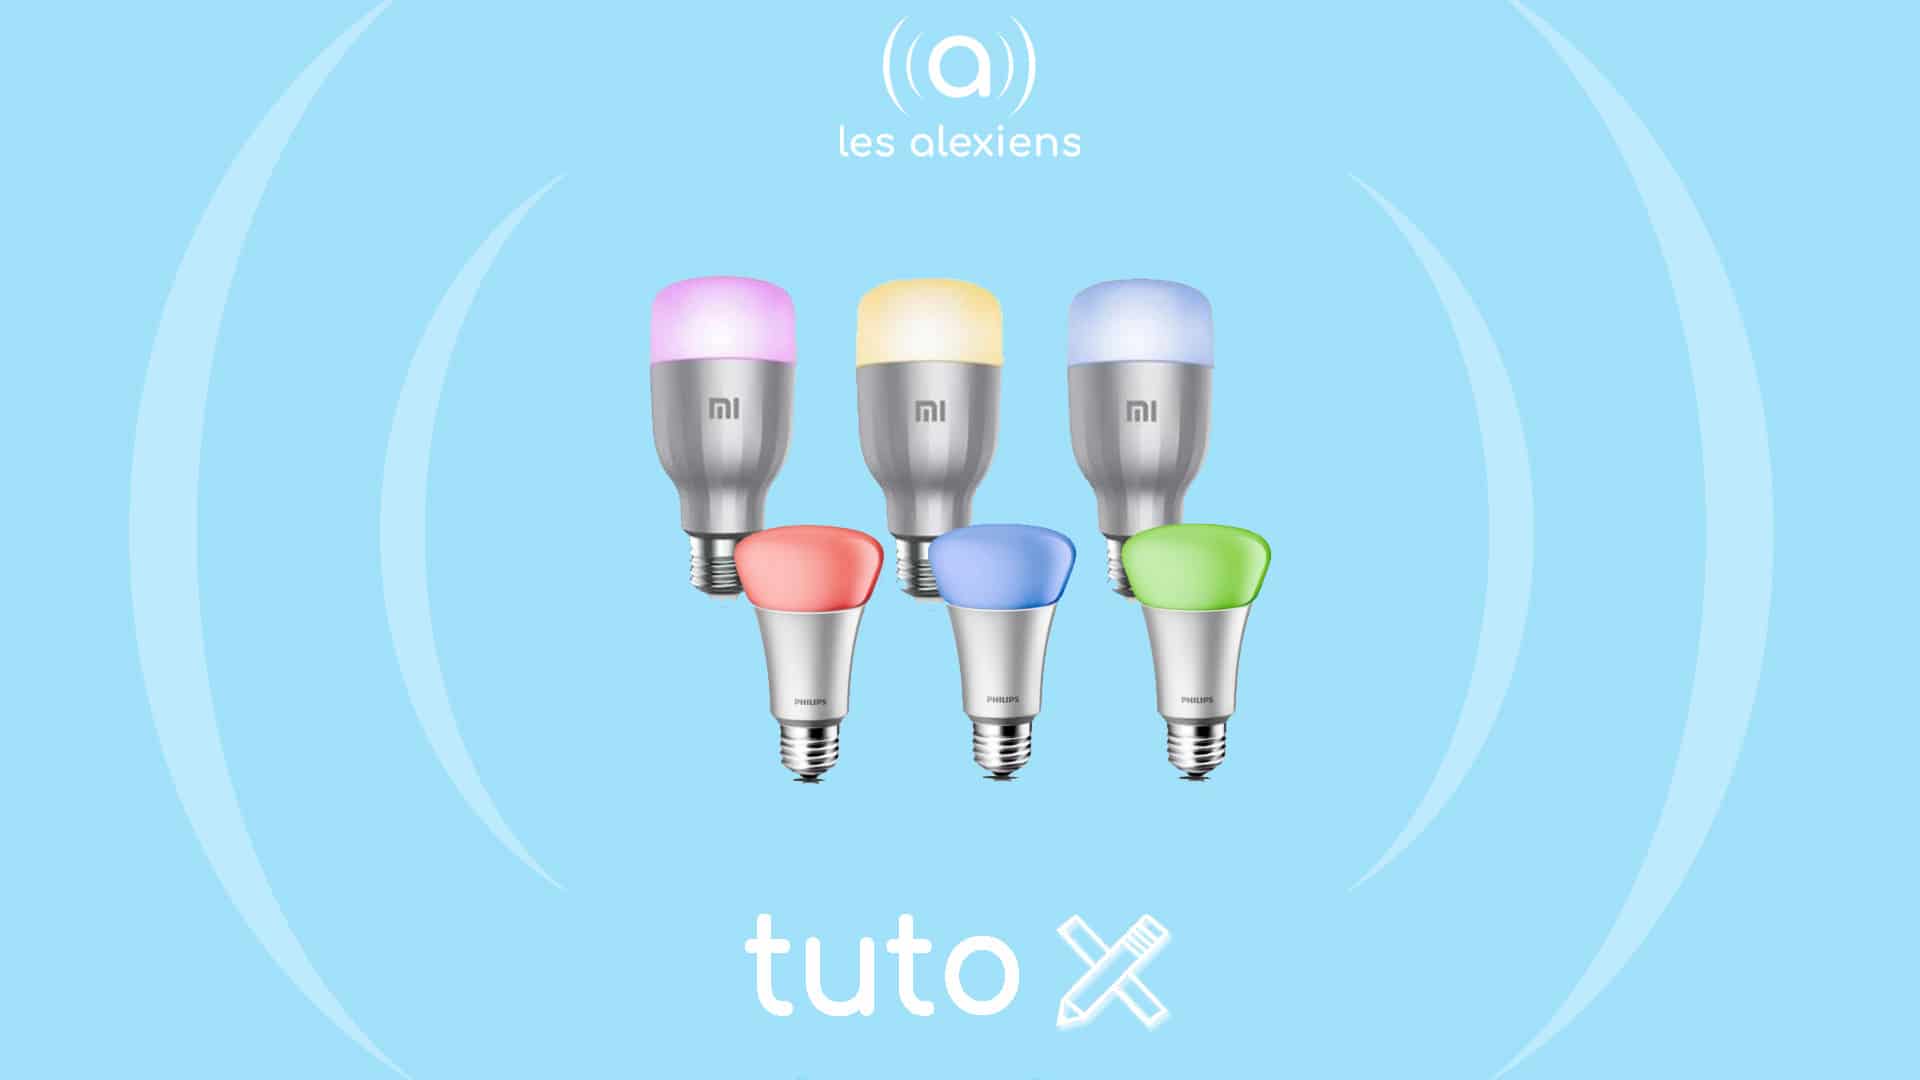 Ampoule LED Connectée Alexa Echo Google Home Variateur RGB Lumière